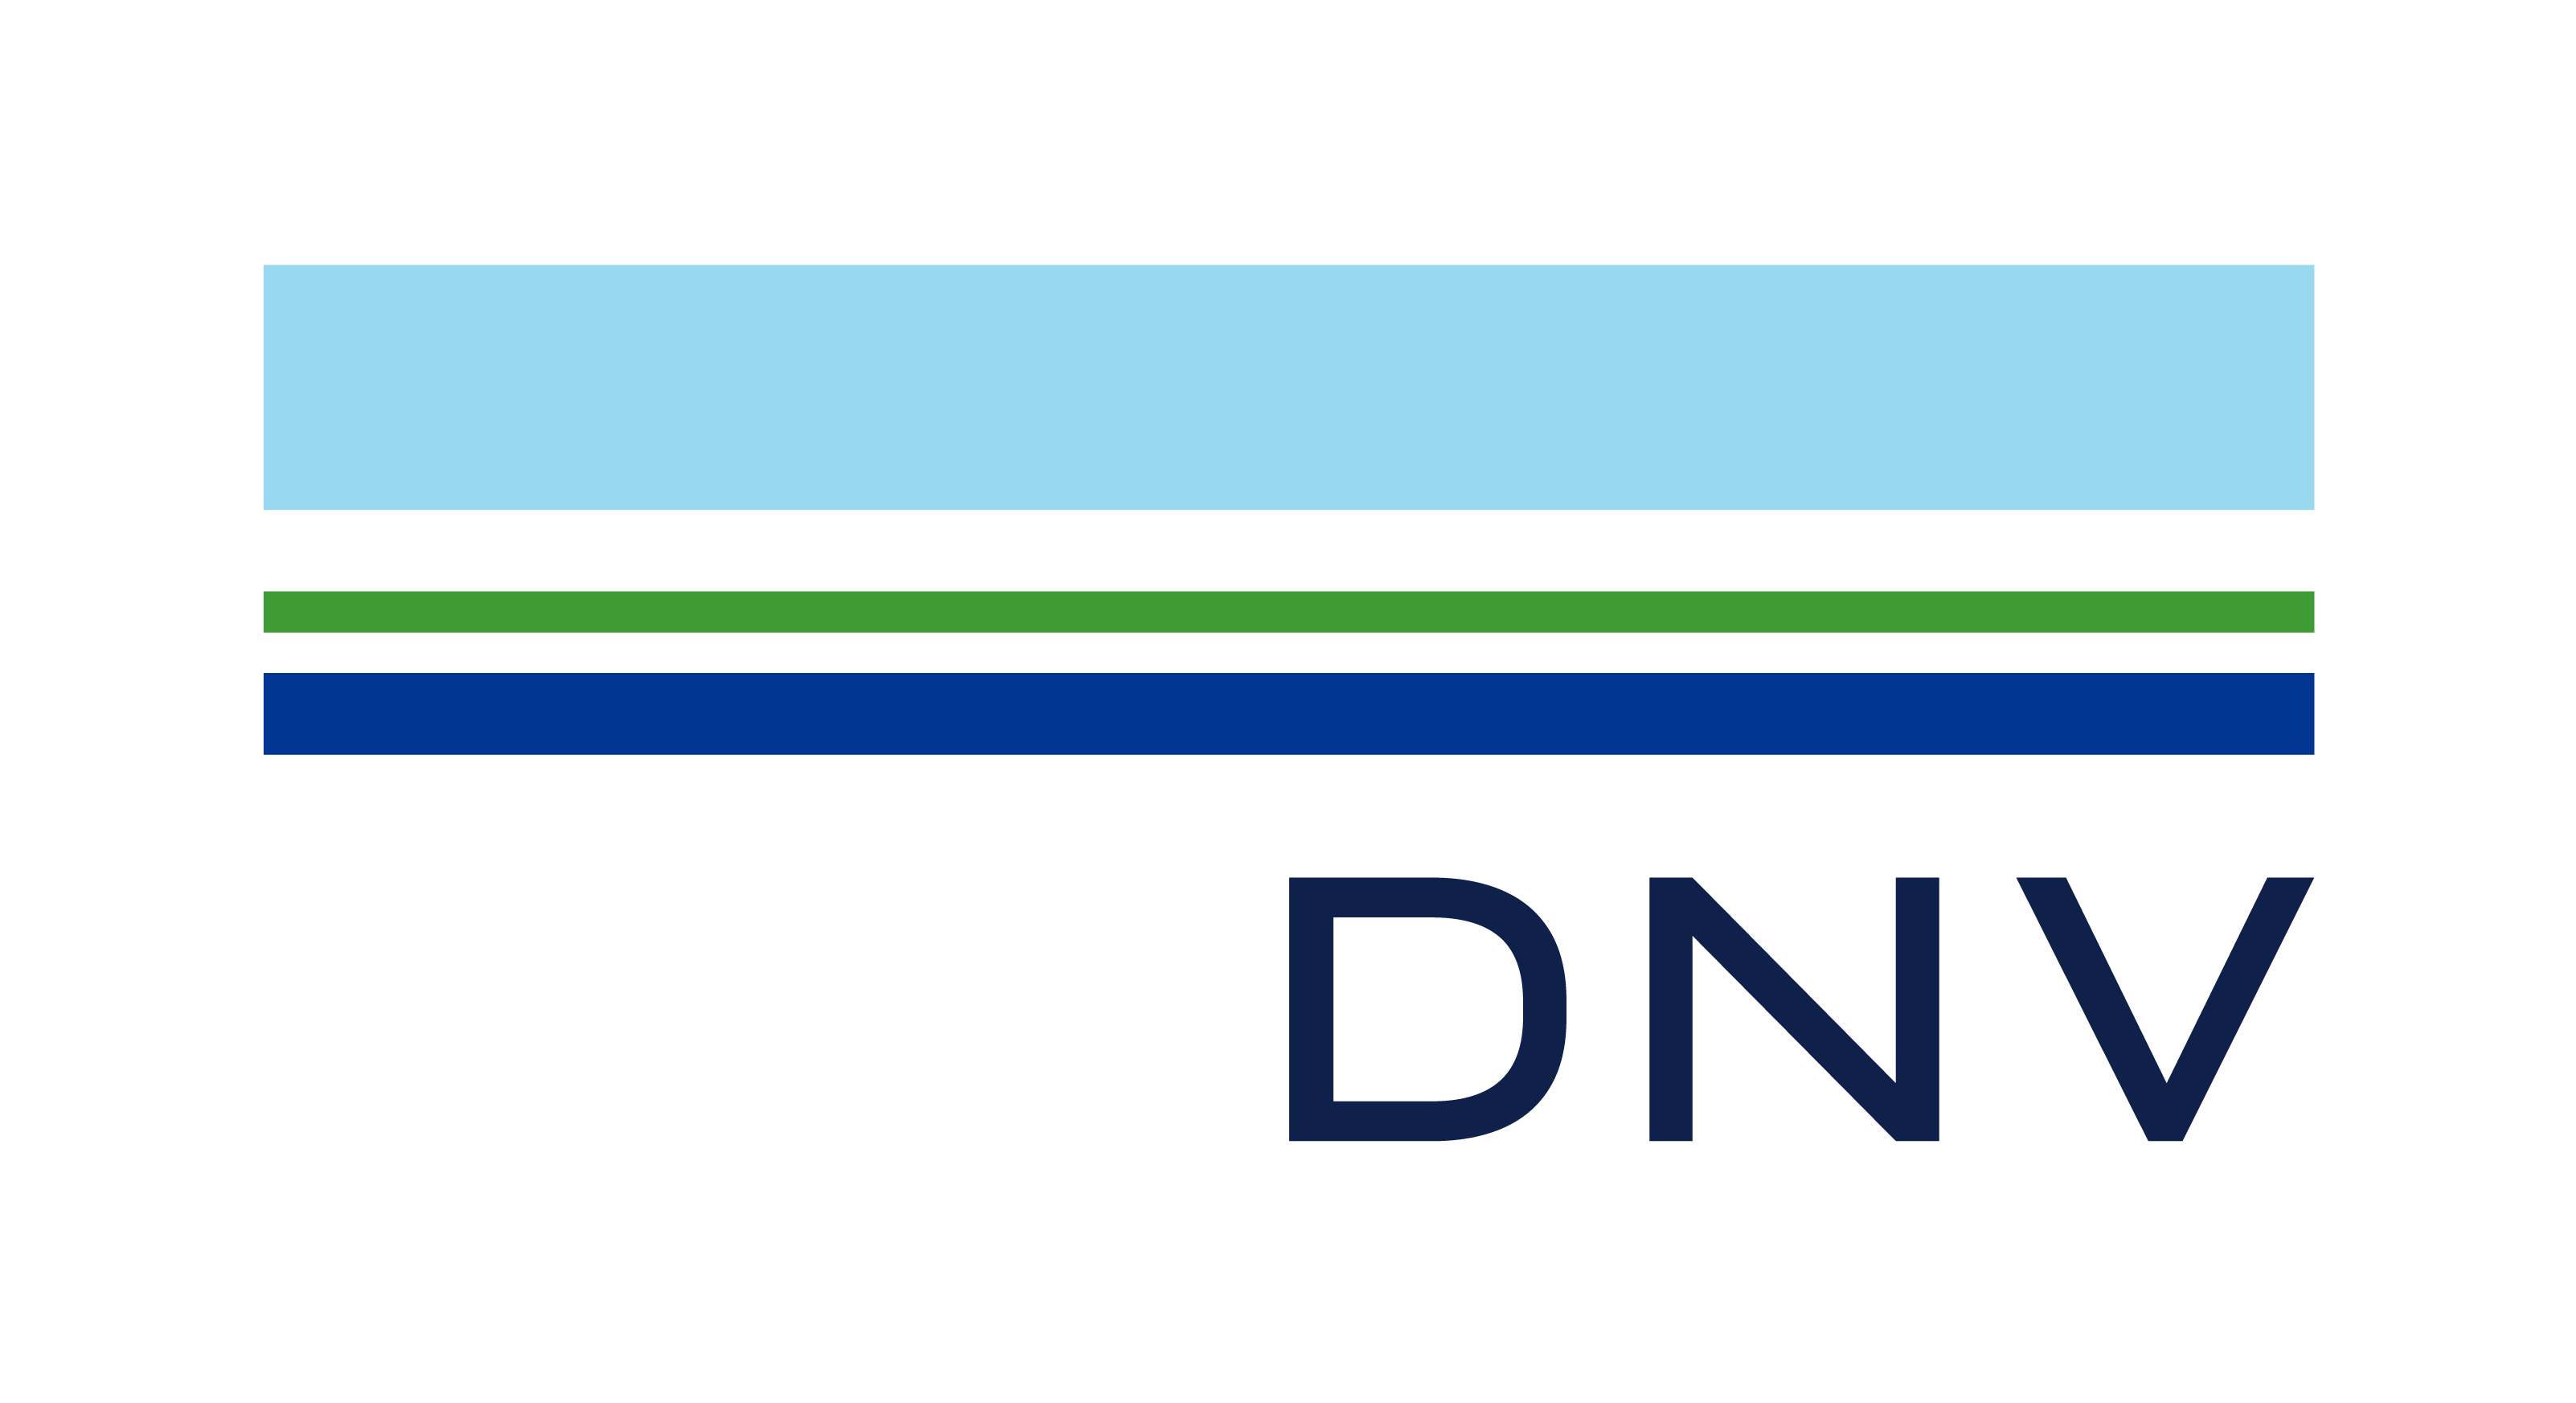 DNV's 2021 Healthcar